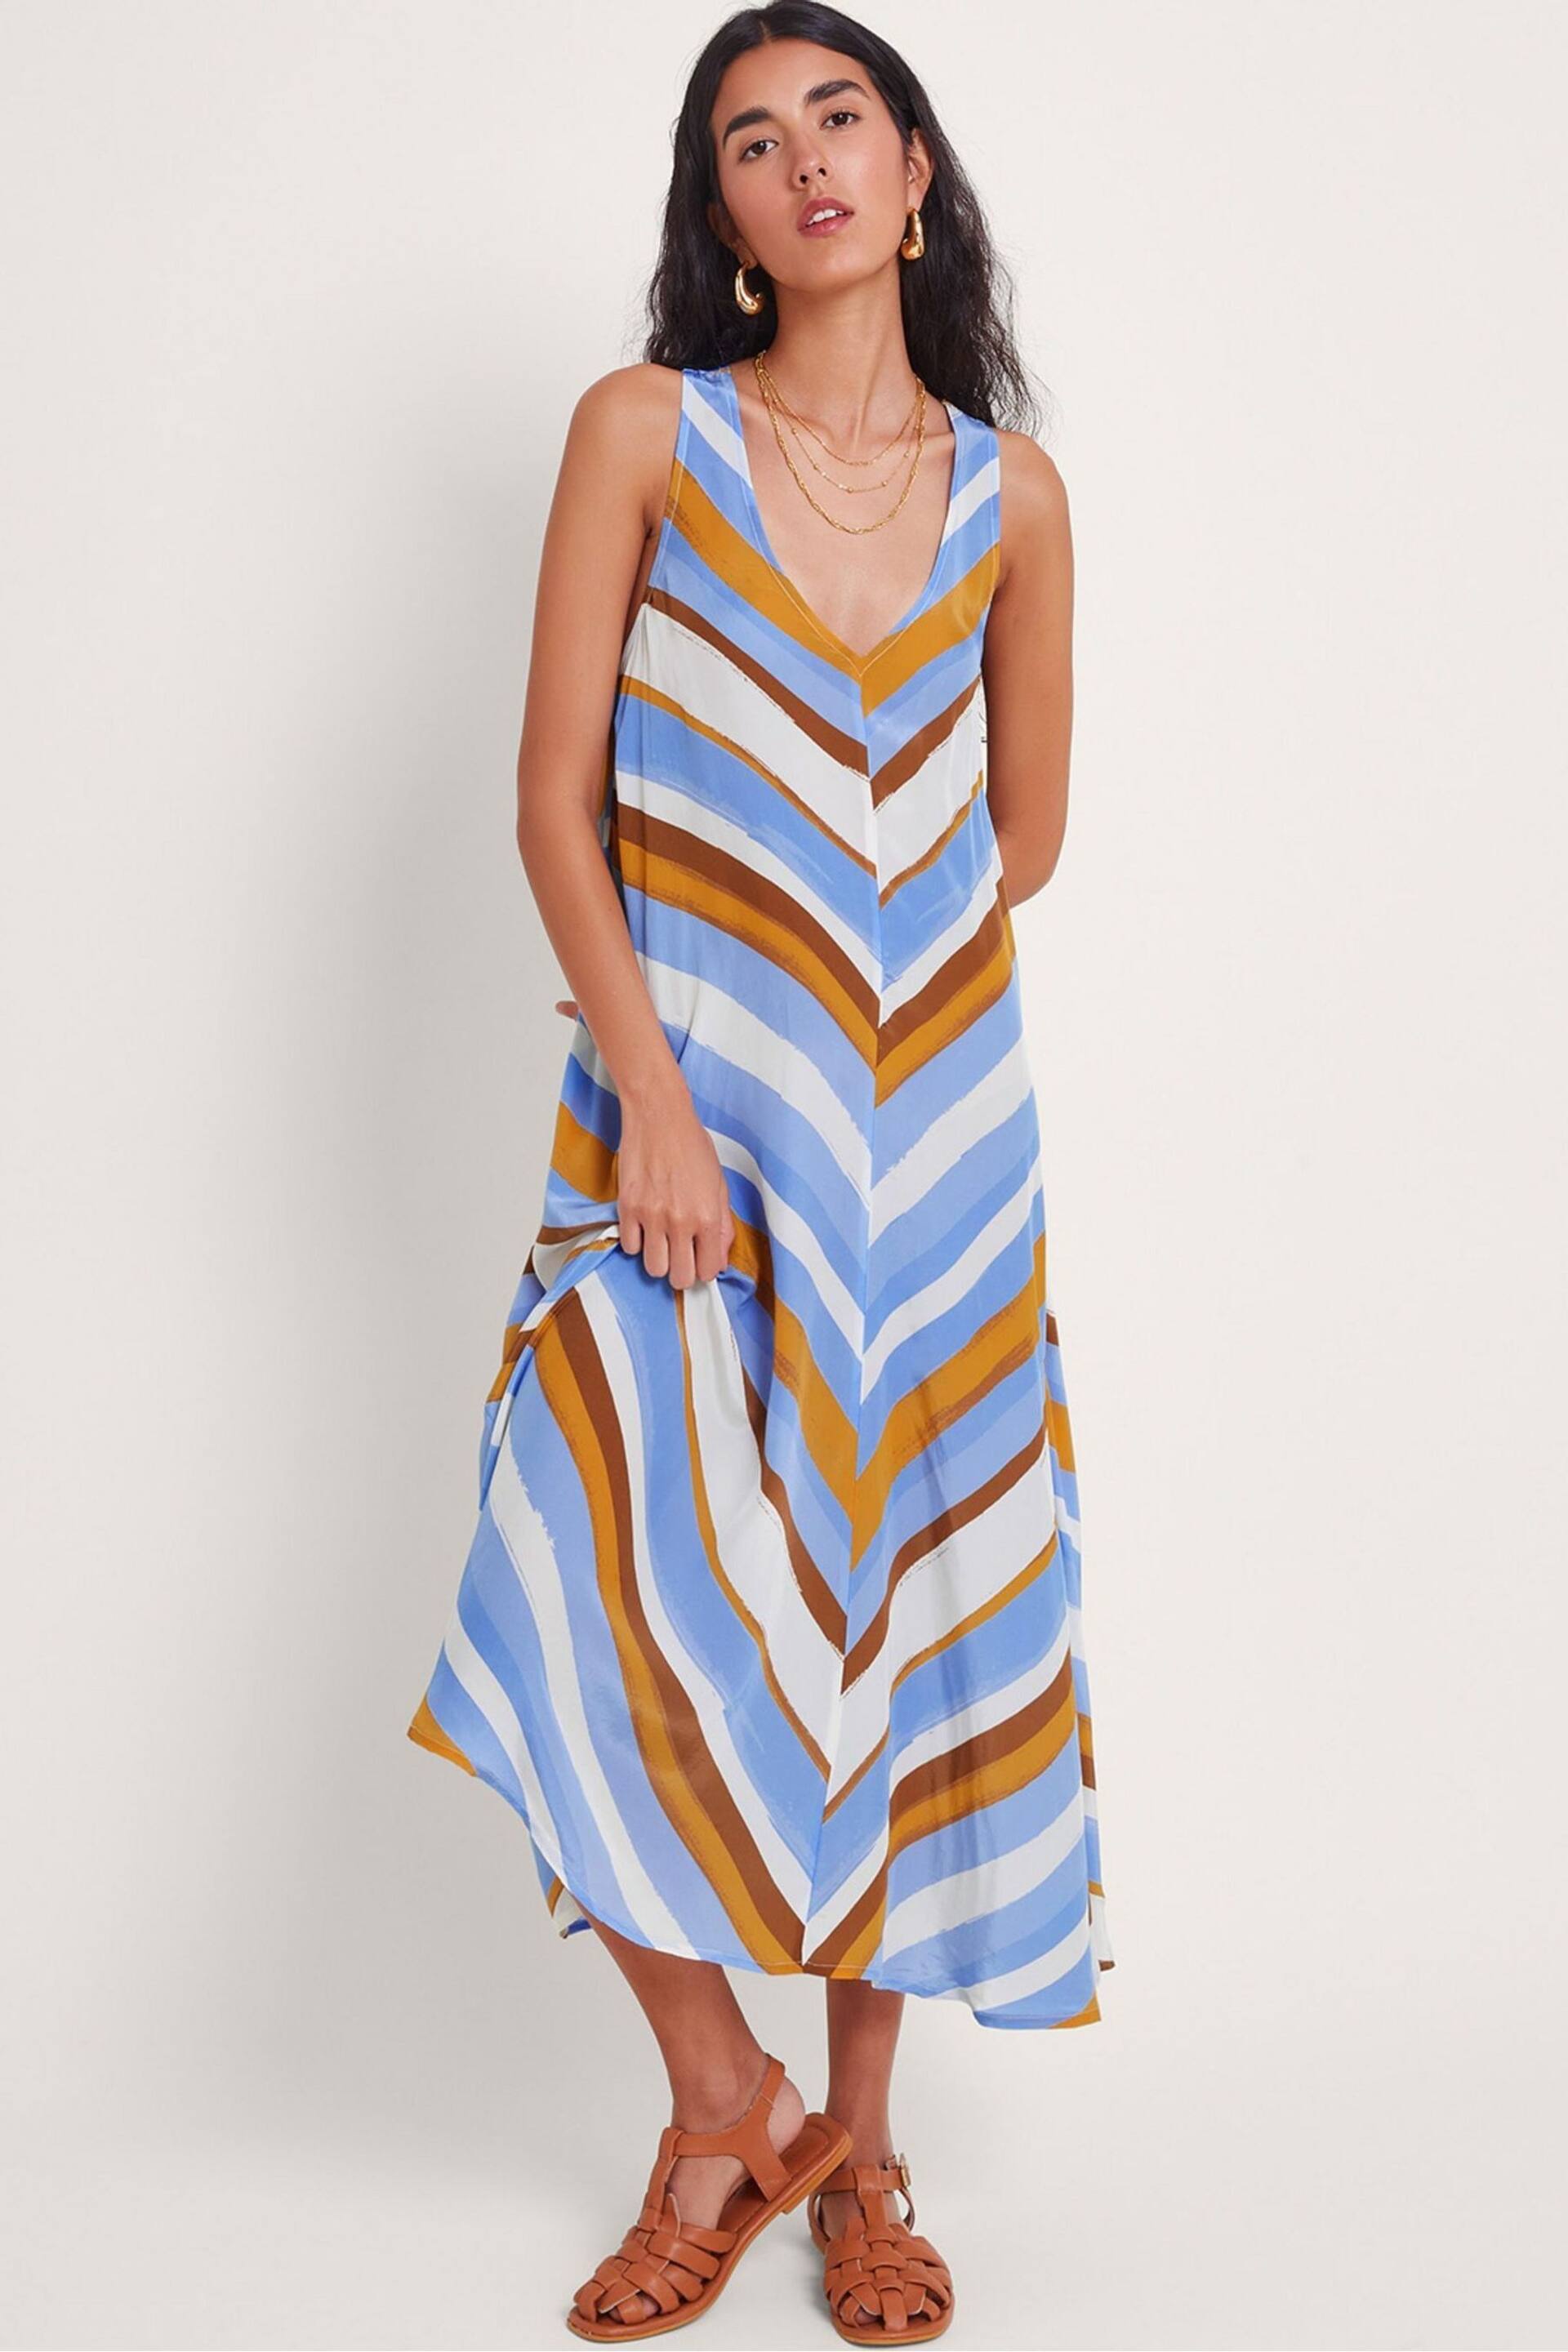 Monsoon Blue Byrdie Stripe Dress - Image 1 of 5